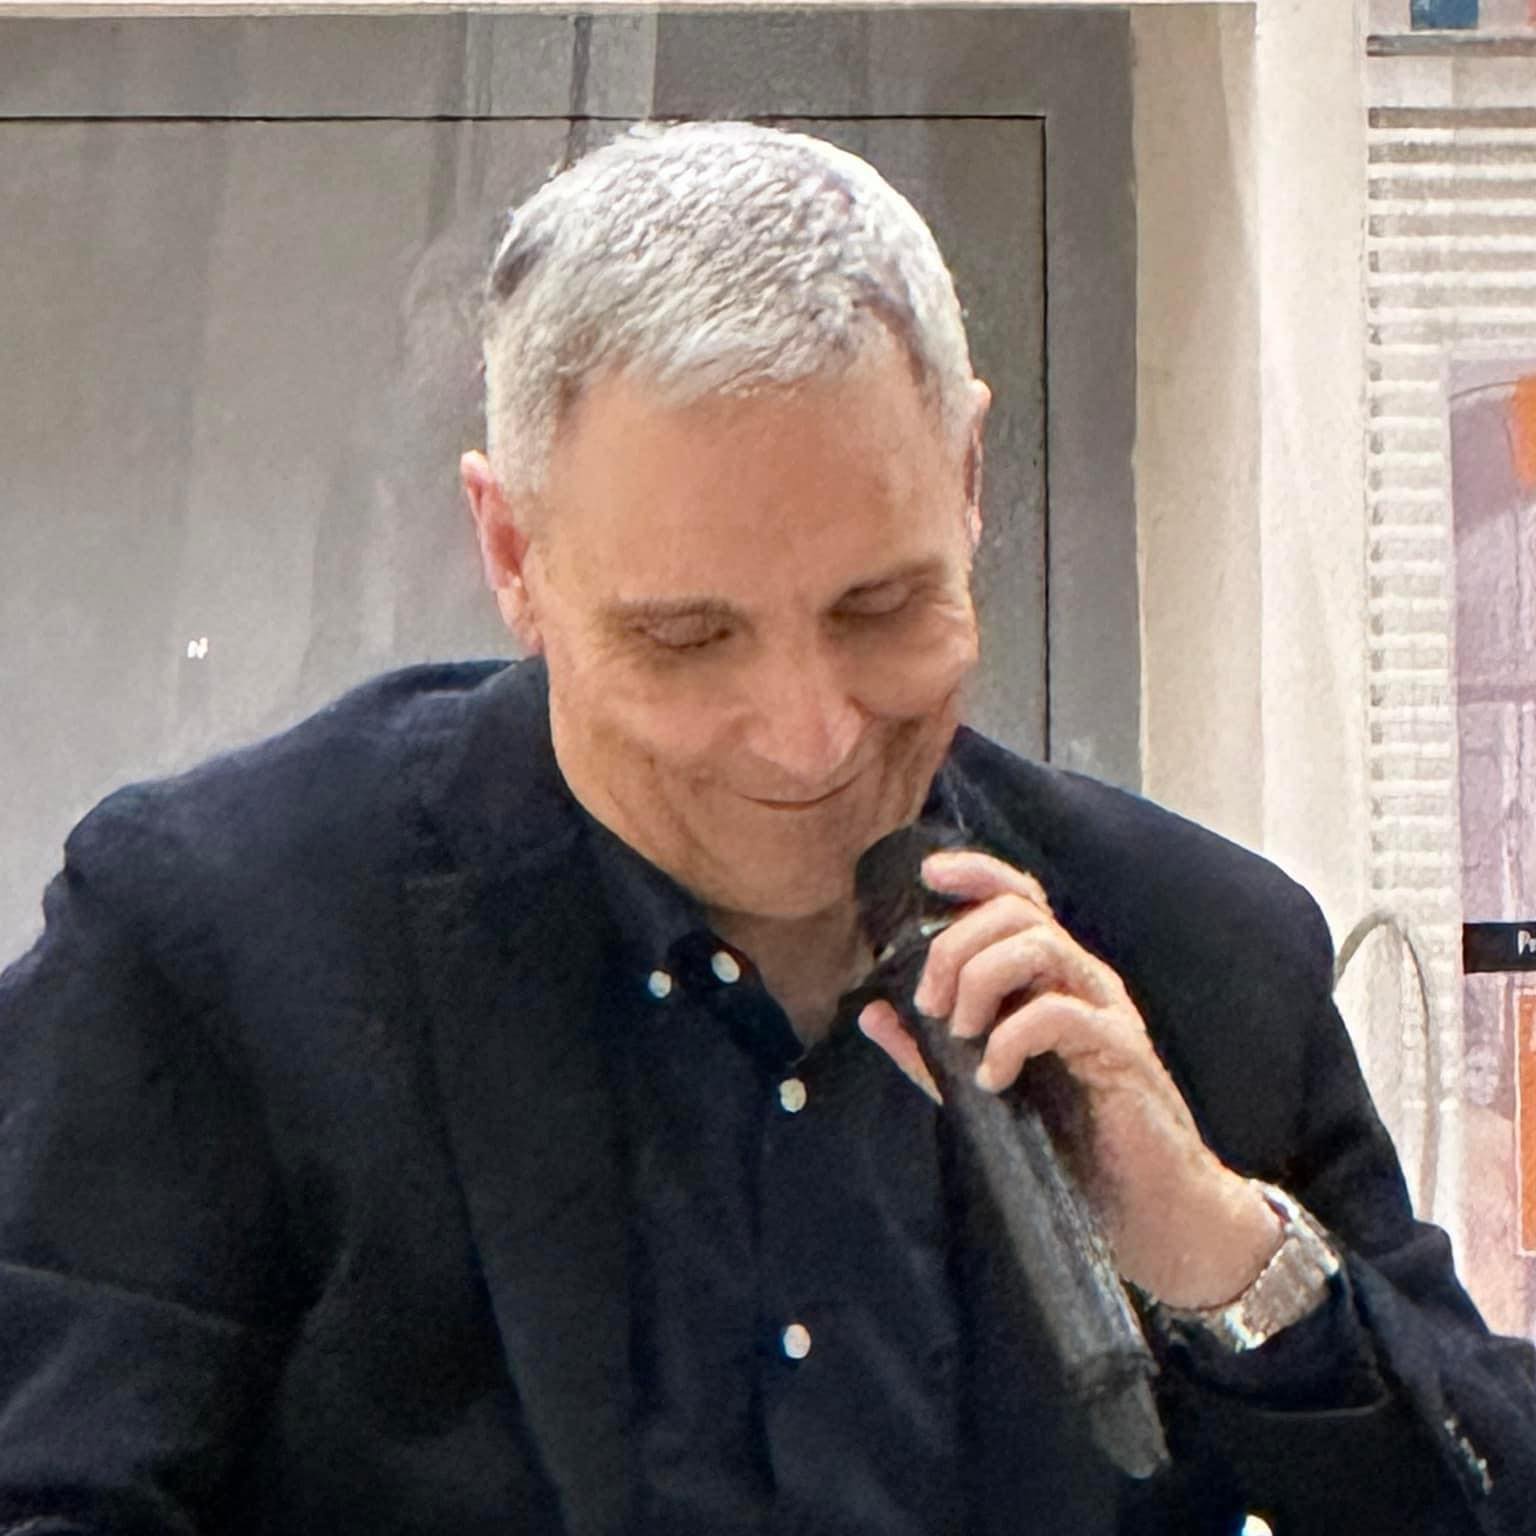 Lo scrittore Maurizio De Giovanni a Bacoli per presentare il suo ultimo romanzo “Sorelle”